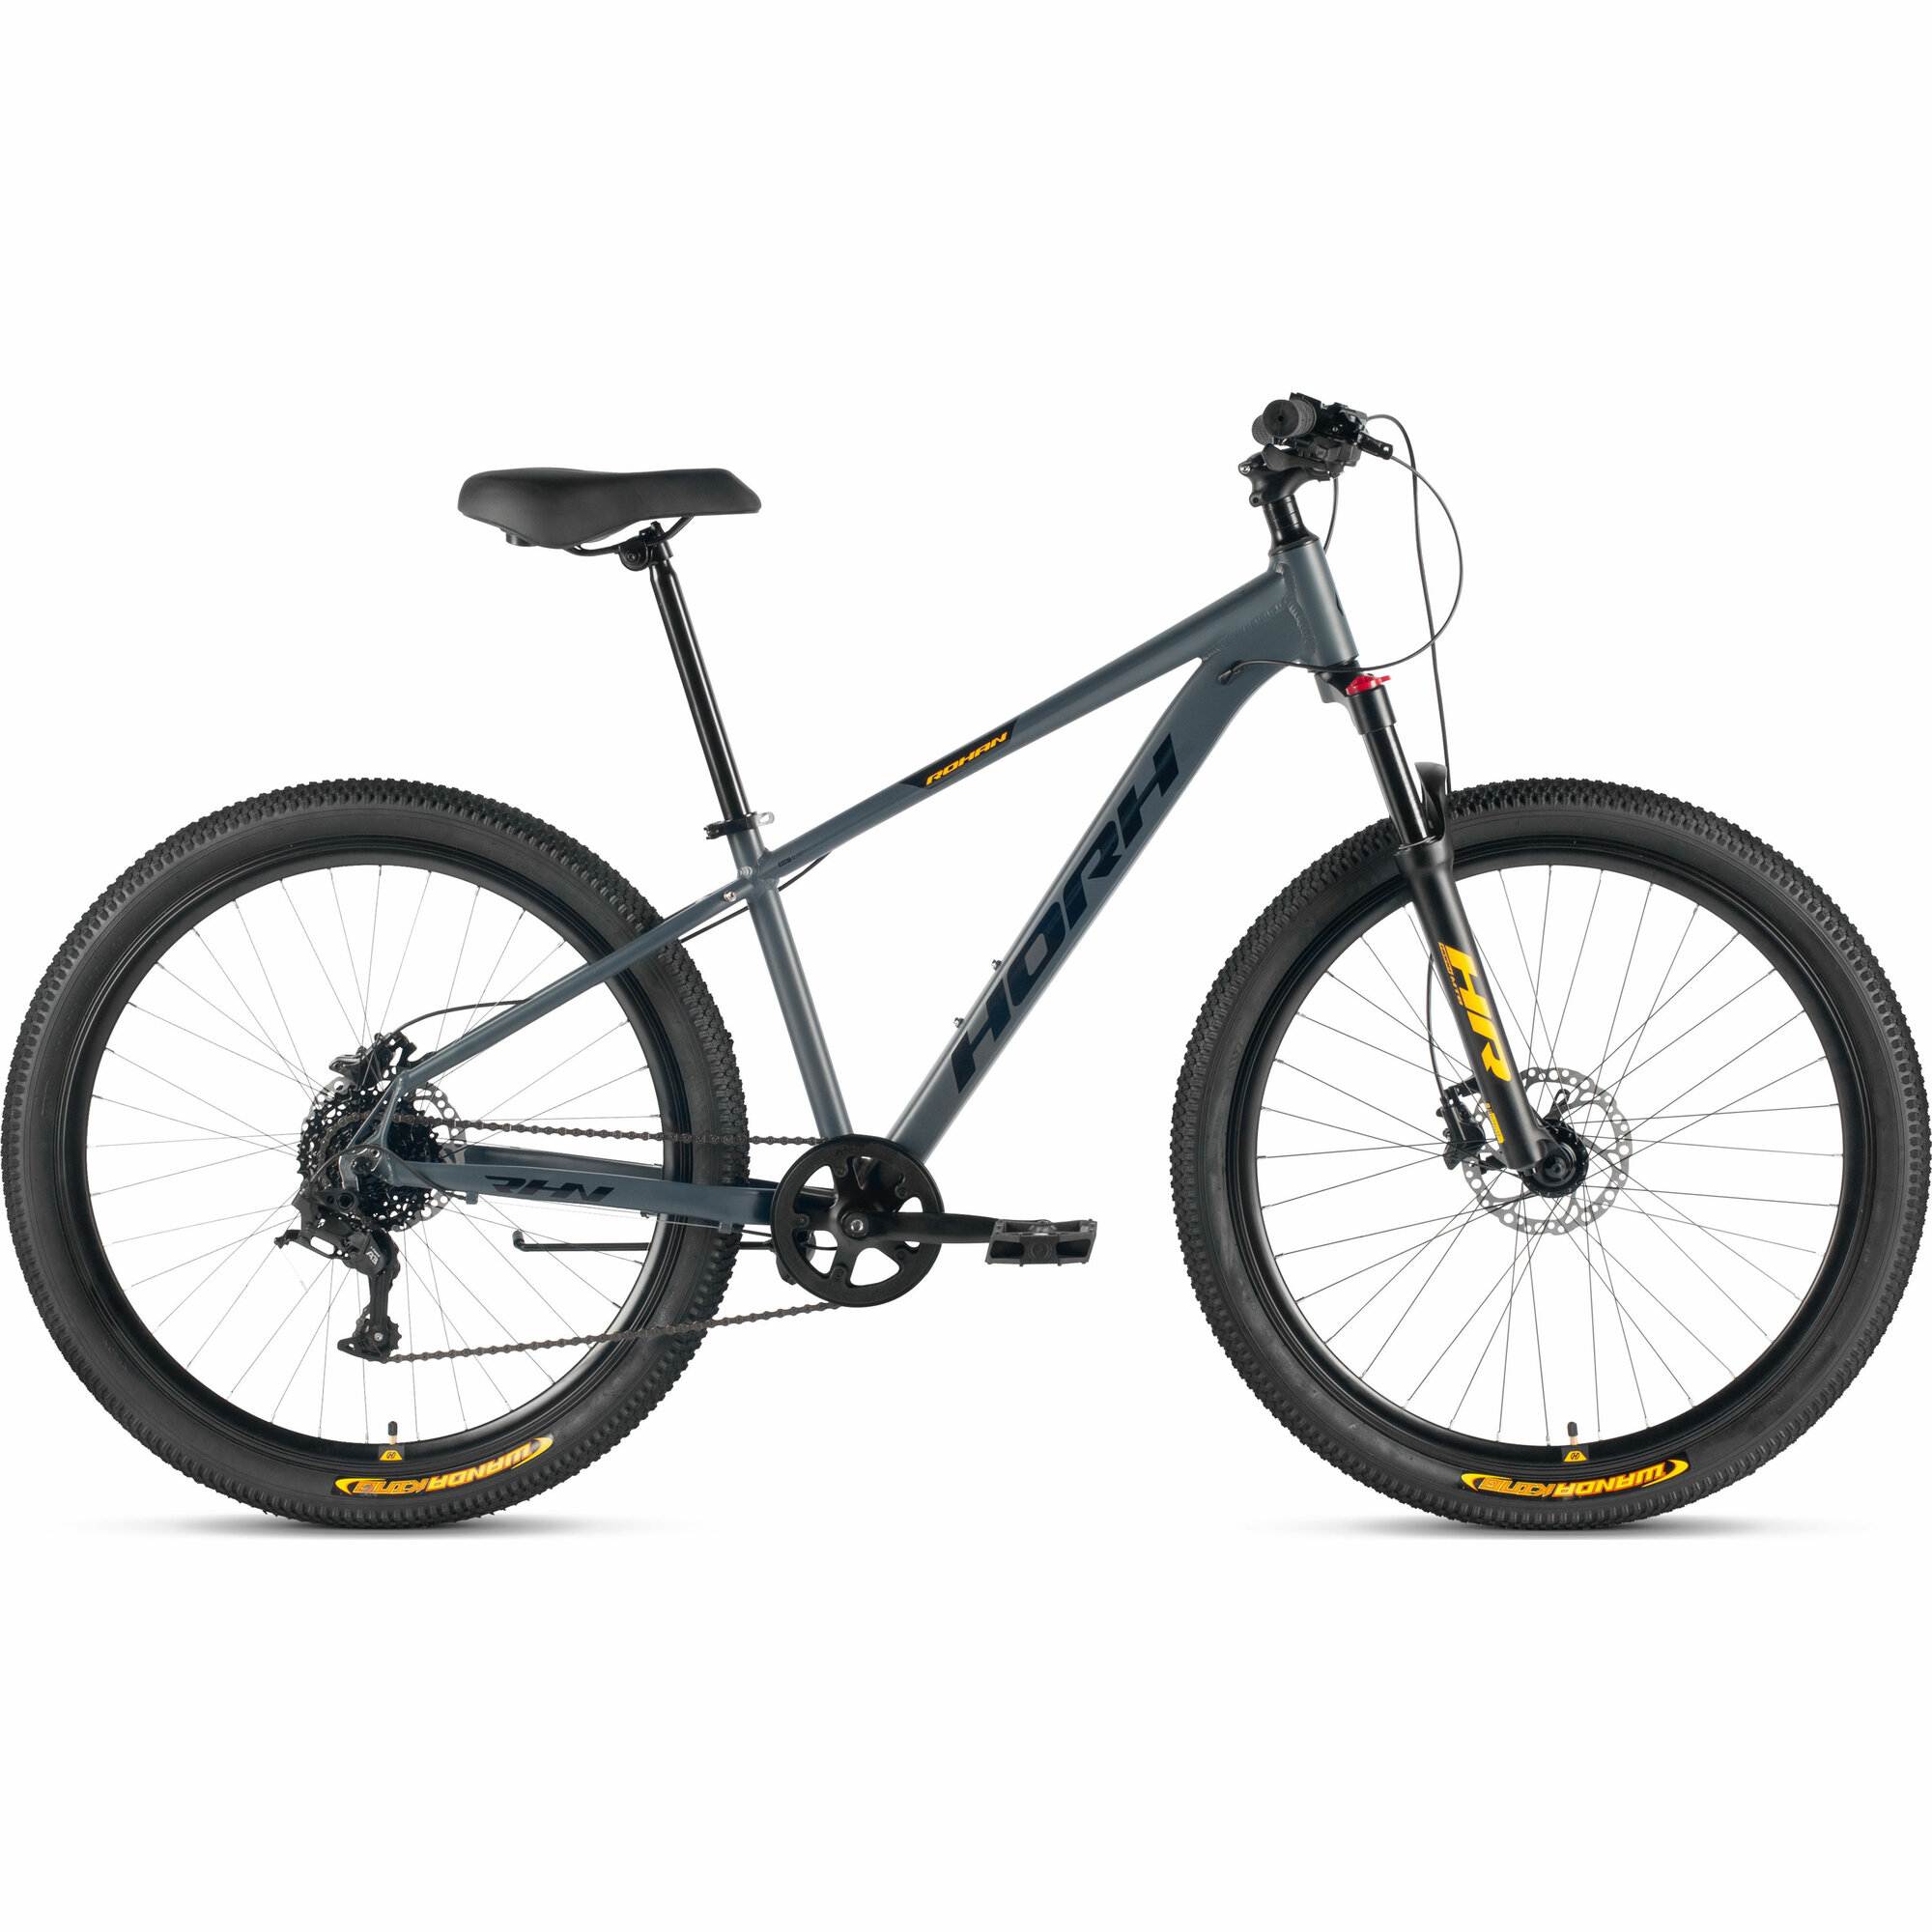 Велосипед горный HORH ROHAN RHD 7.1 27.5" (2024), хардтейл, взрослый, мужской, алюминиевая рама, 8 скоростей, дисковые гидравлические тормоза, цвет Dark Grey-Black-Yellow, темно-серый/черный/жёлтый цвет, размер рамы 17", для роста 170-180 см